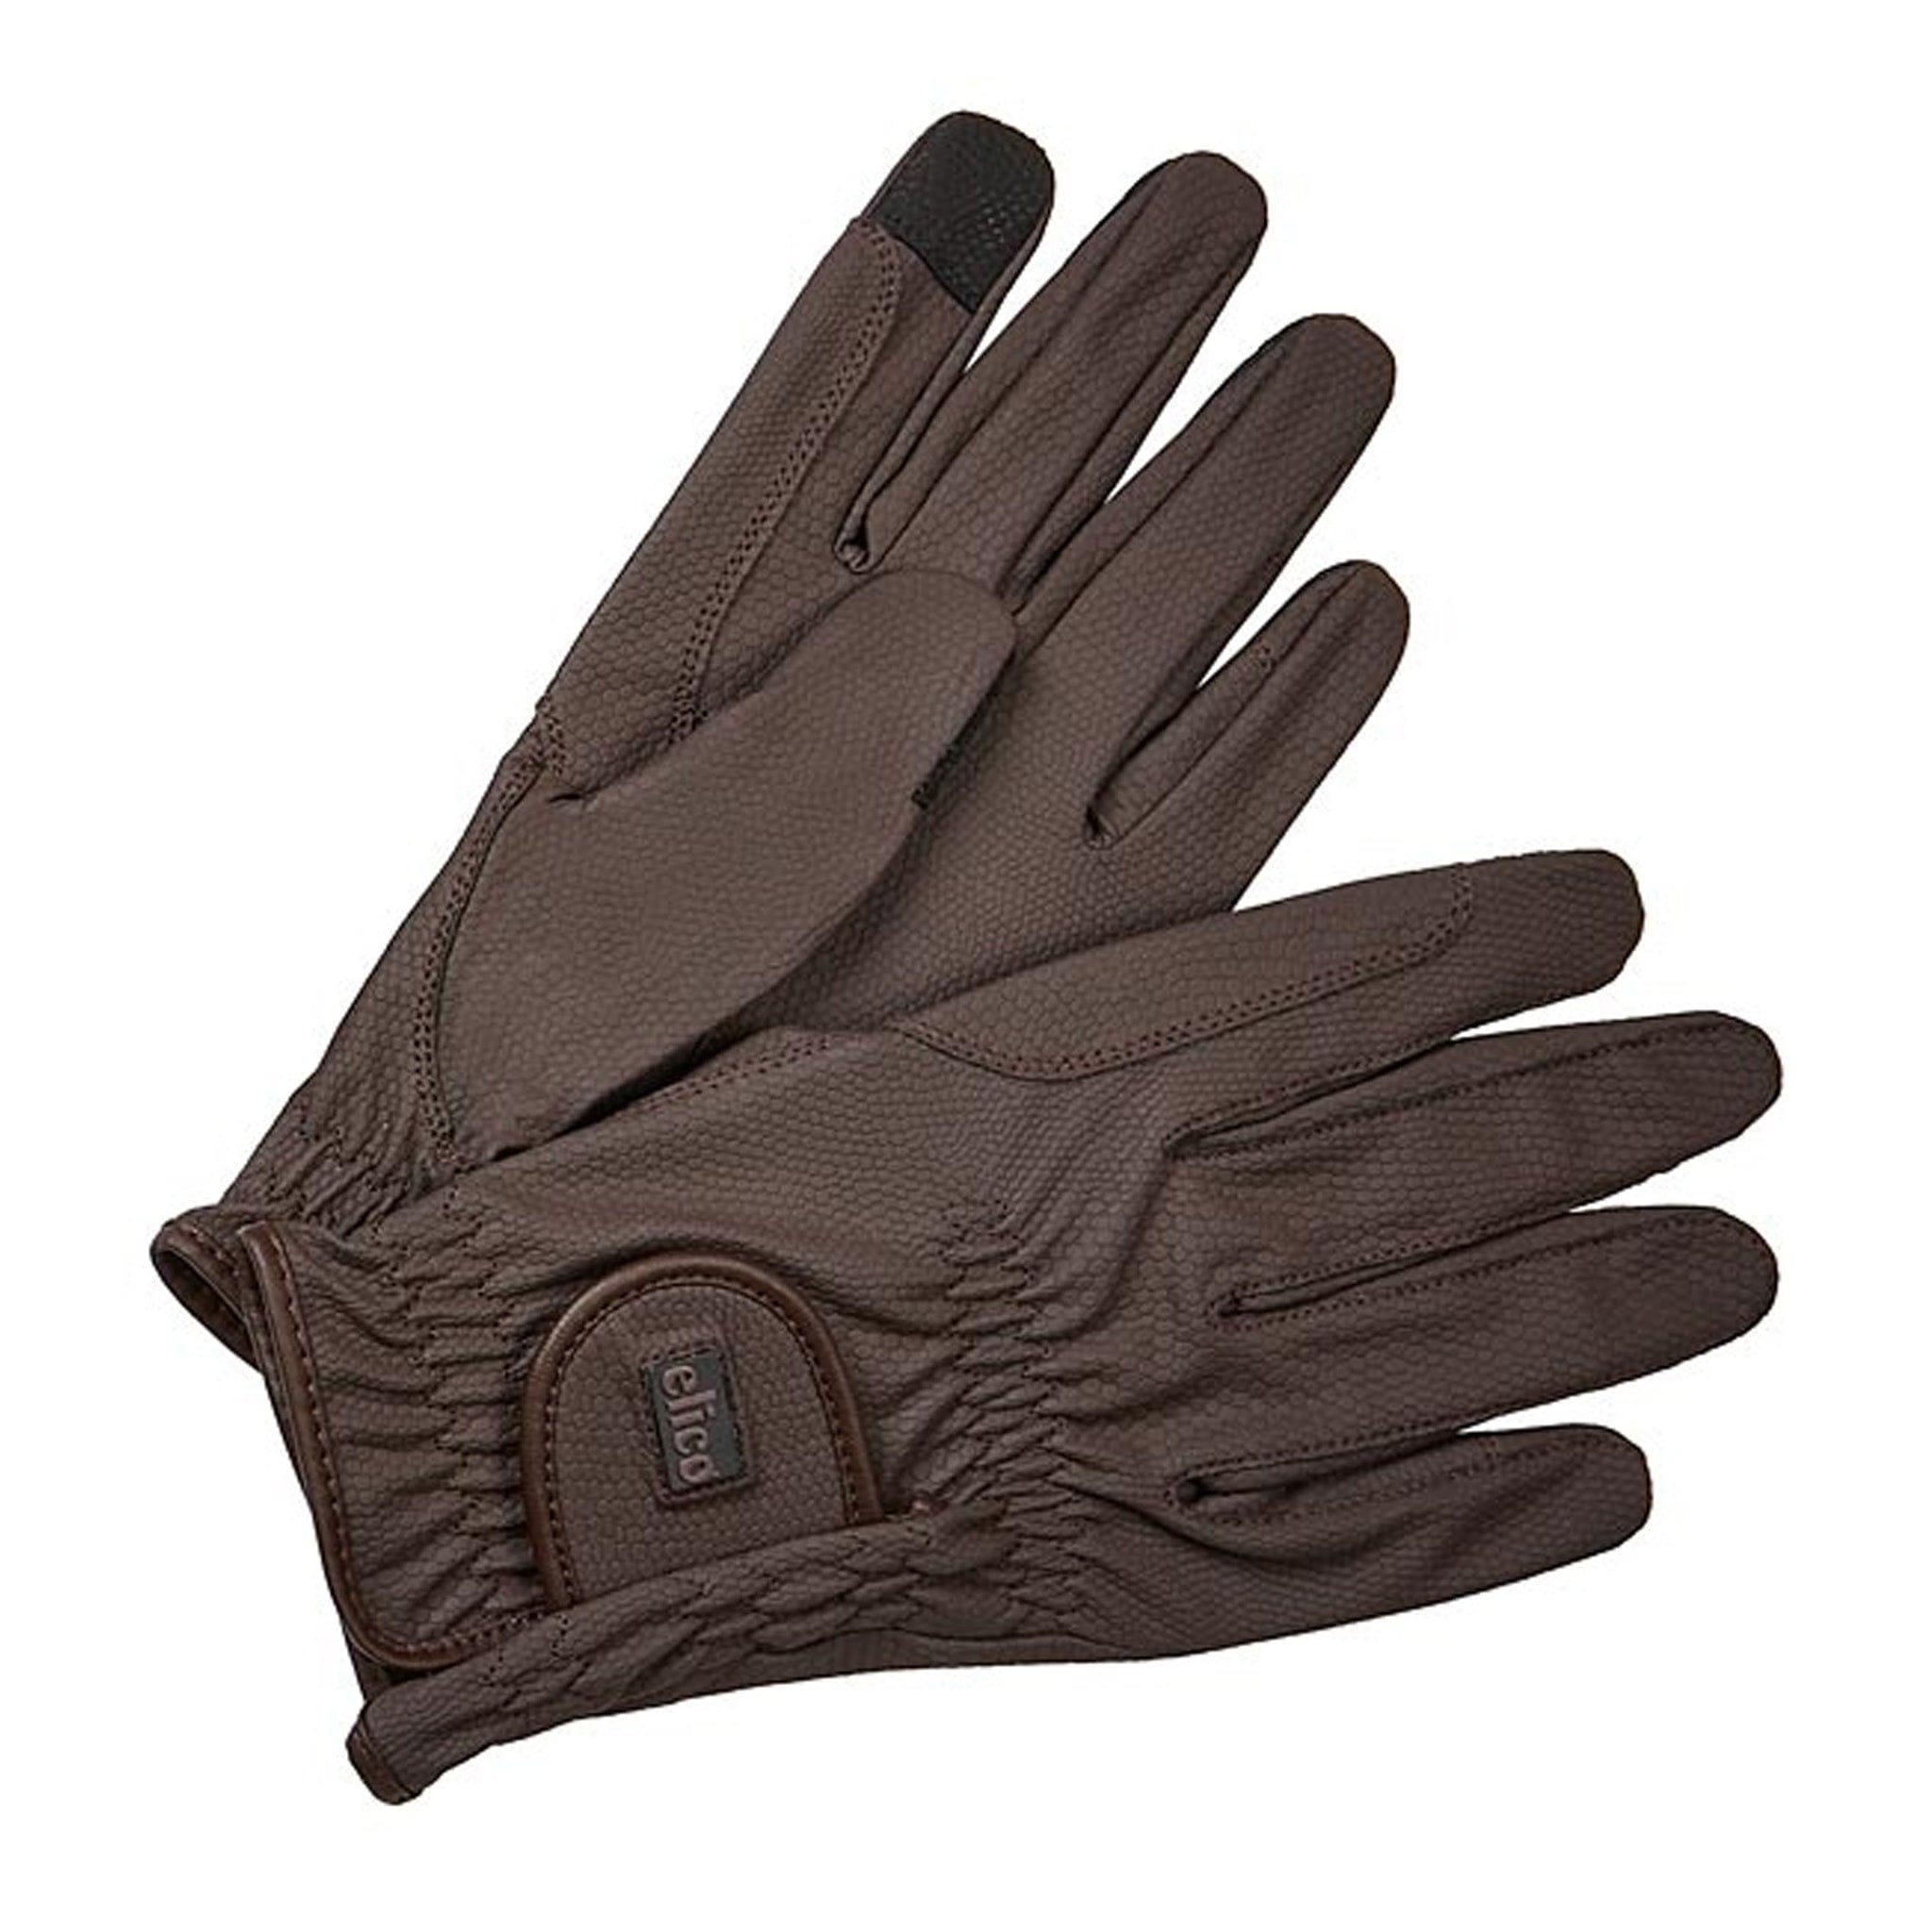 Elico Children's Chatsworth Gloves GLCHA140 Brown Pair